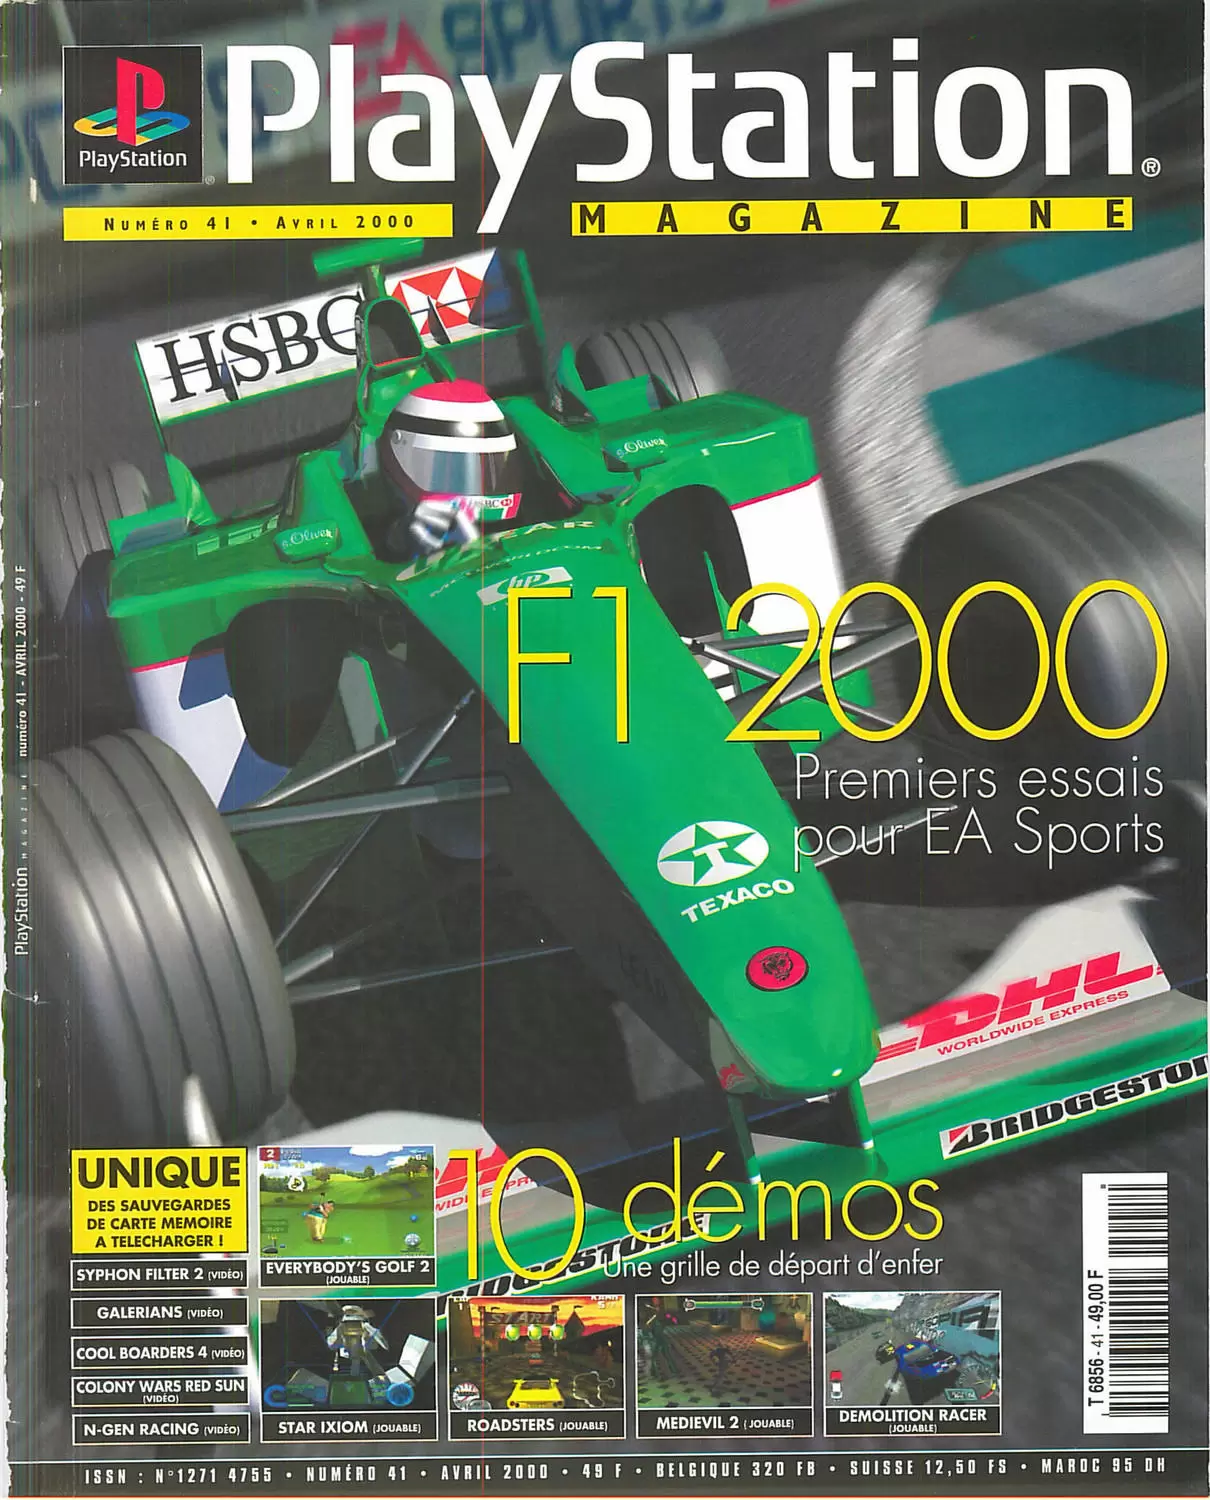 Playstation Magazine - Playstation Magazine #41